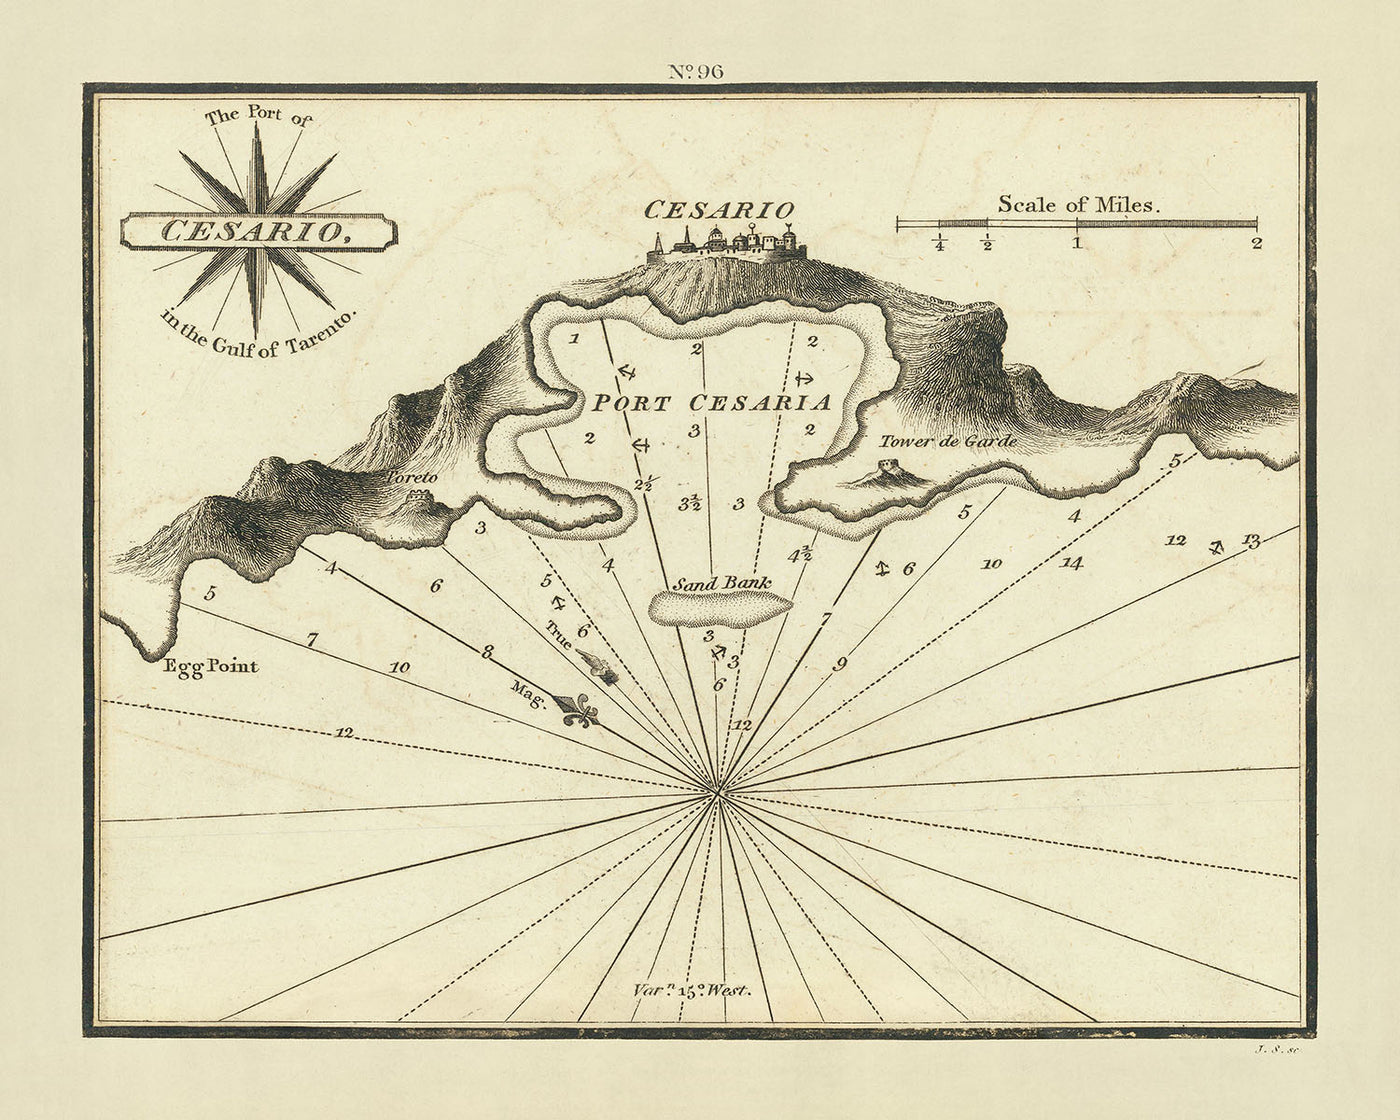 Carte nautique du Vieux-Port de Cesario par Heather, 1802 : Golfe de Tarente, sondages, rose des vents